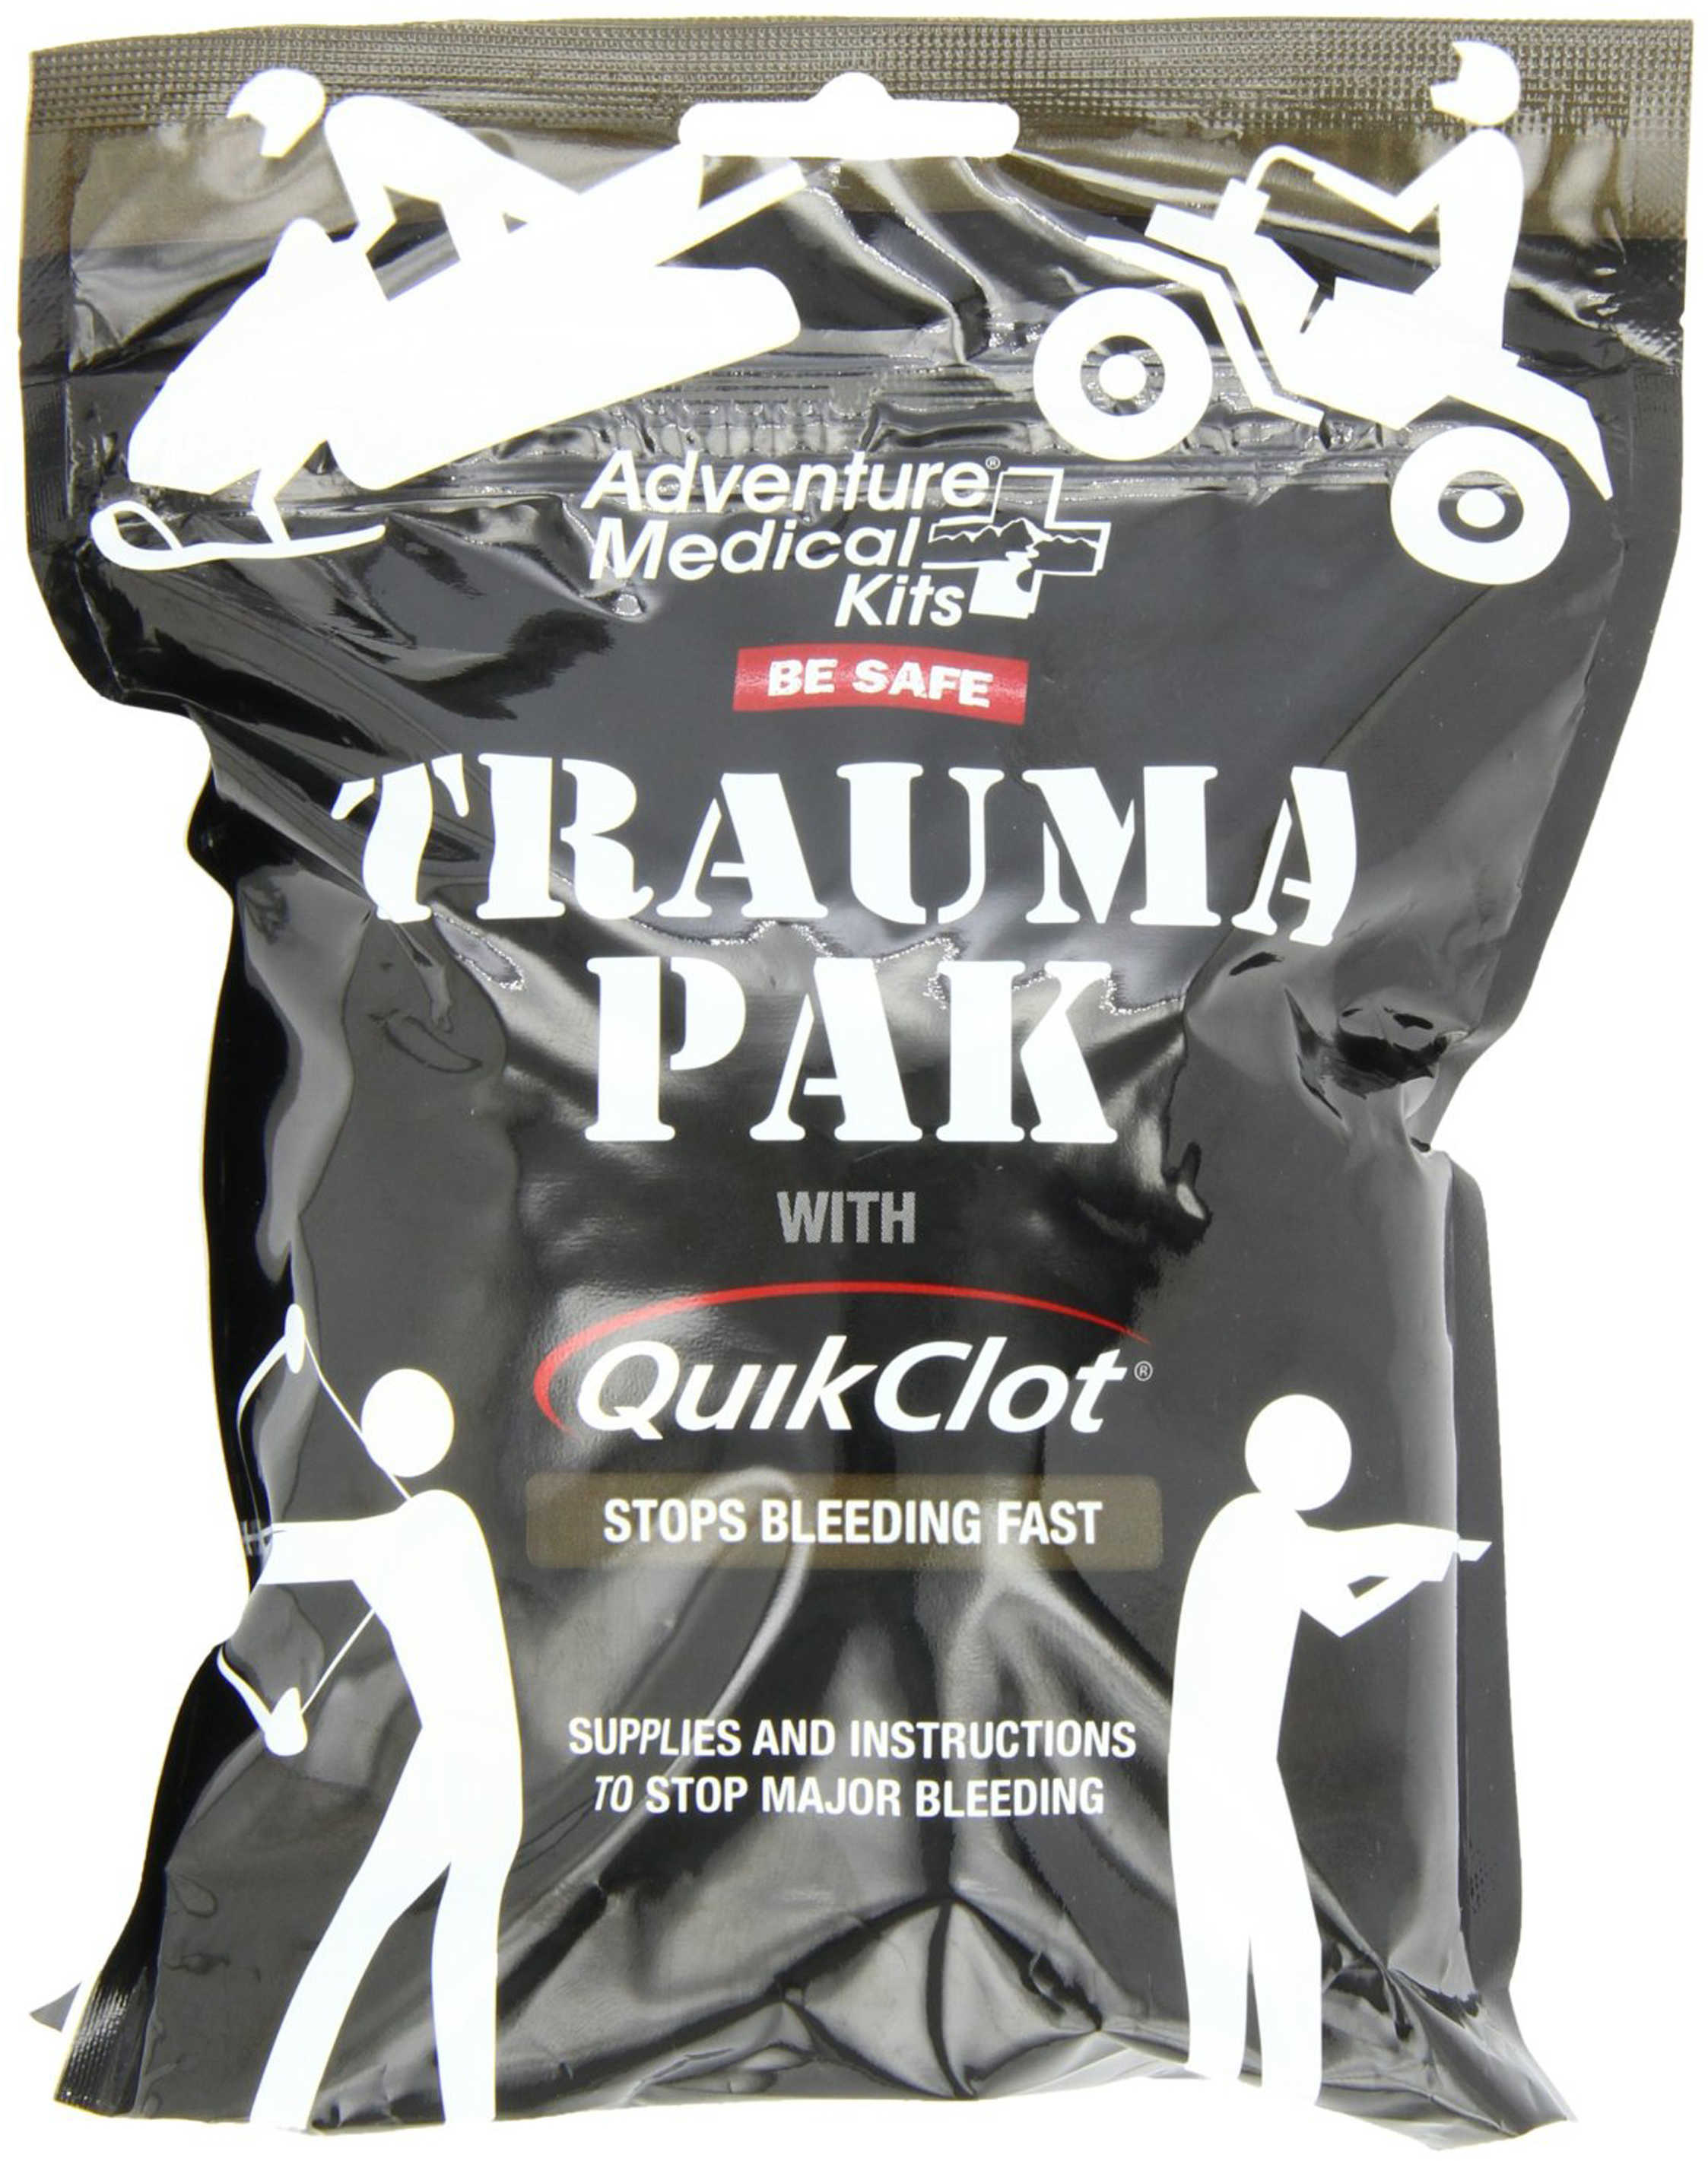 AMK Trauma Pak with QuikClot